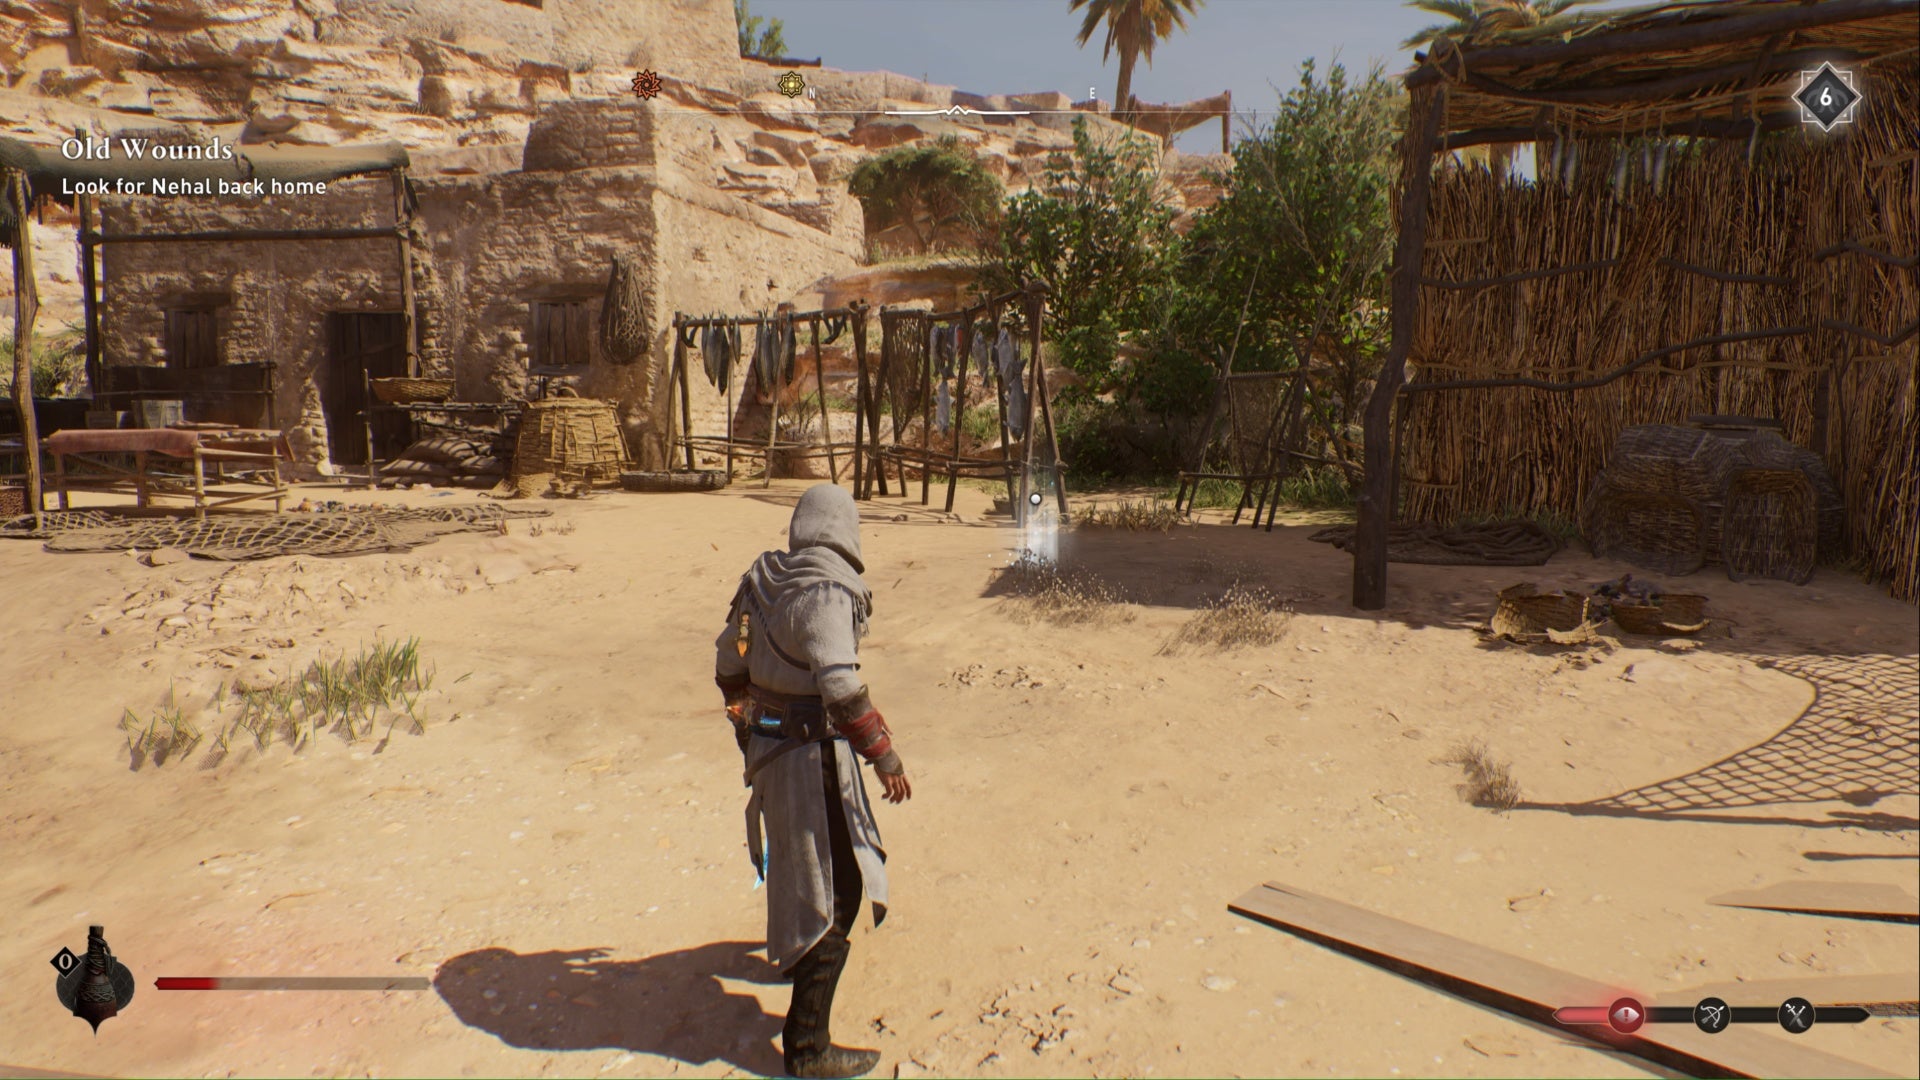 Assassins Creed Mirage, Basim se enfrenta al marcador brillante de la ubicación del tesoro enigma dejado atrás en una aldea abandonada.  A lo lejos se ven peces colgados de estructuras de madera, a la izquierda un edificio ya la derecha una cabaña adosada.